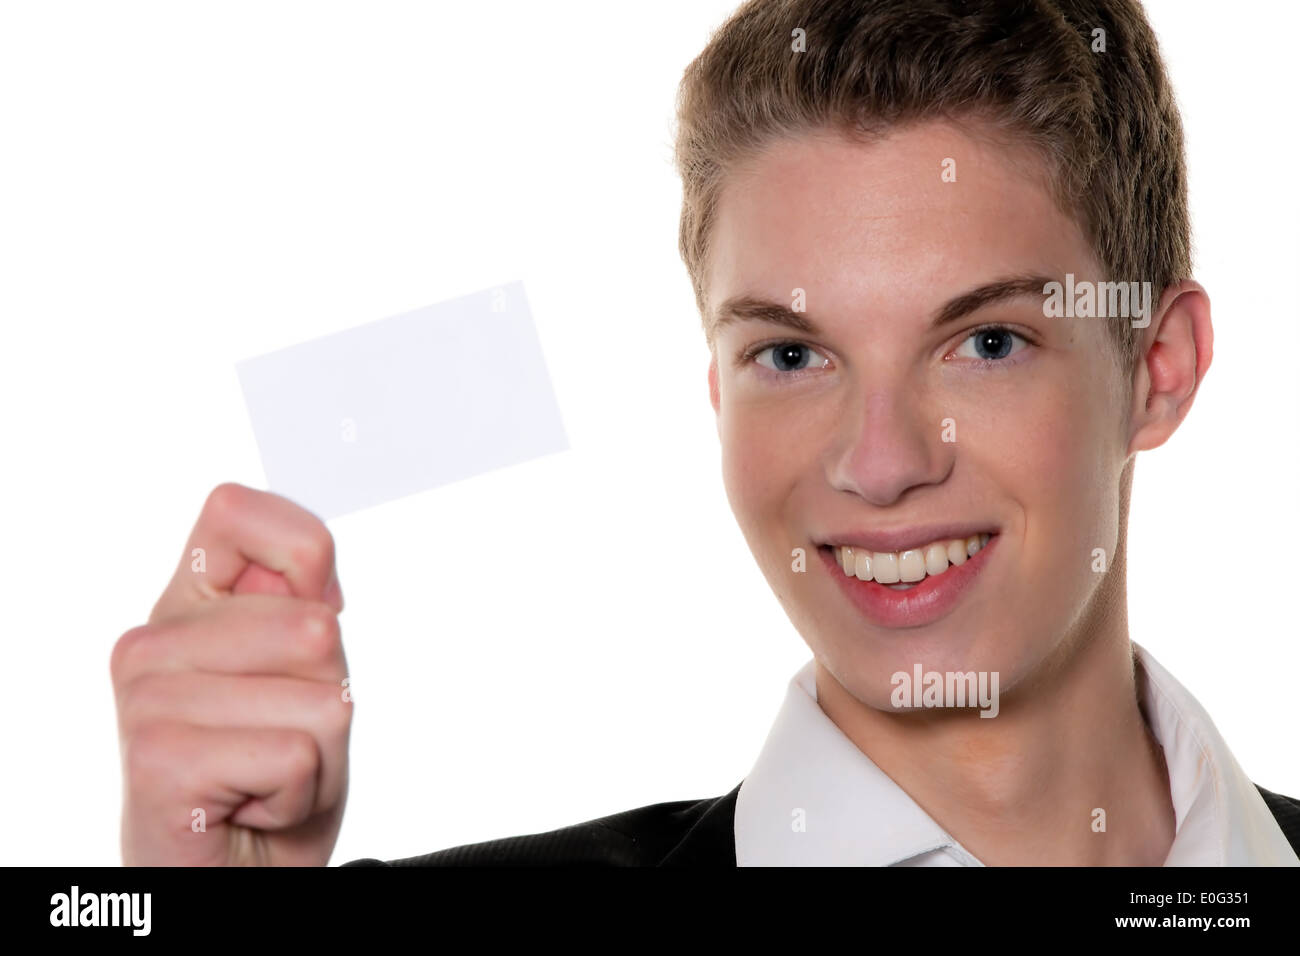 A young rfolgreicher Jung's enterpriser with calling card, Ein junger rfolgreicher Jungunternehmer mit Visitenkarte Stock Photo